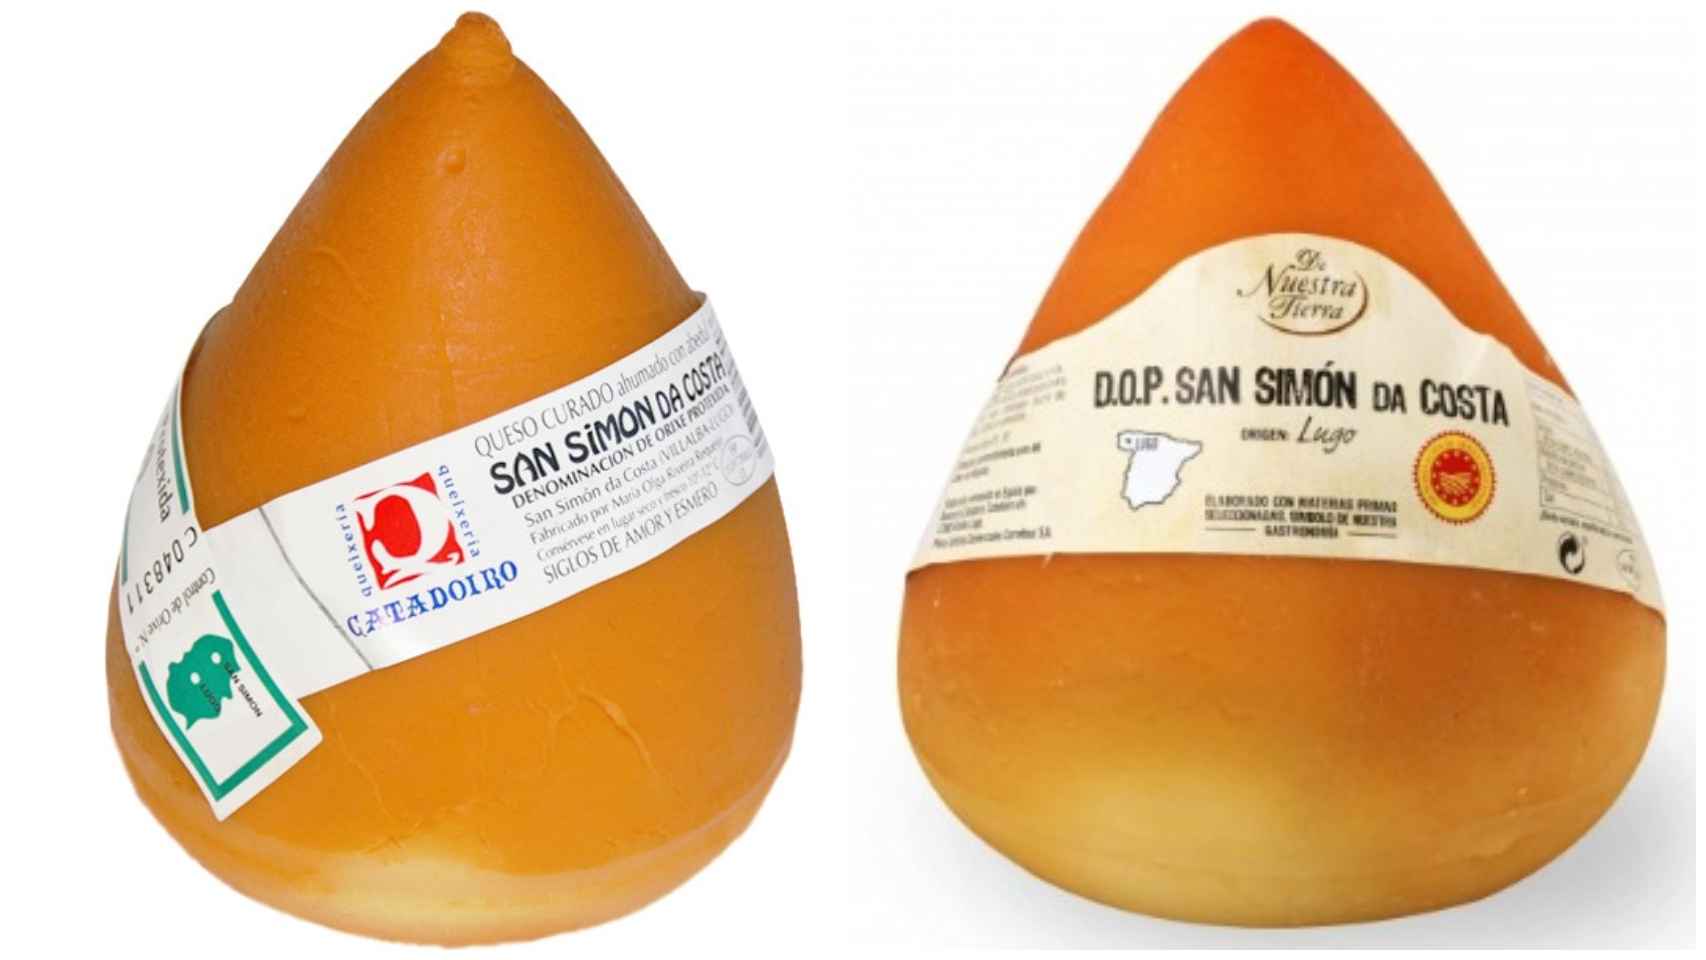 A la izquierda, el queso con D.O. San Simón da Costa Catadoiro y, a la derecha, el De Nuestra Tierra, una marca propia de Carrefour.